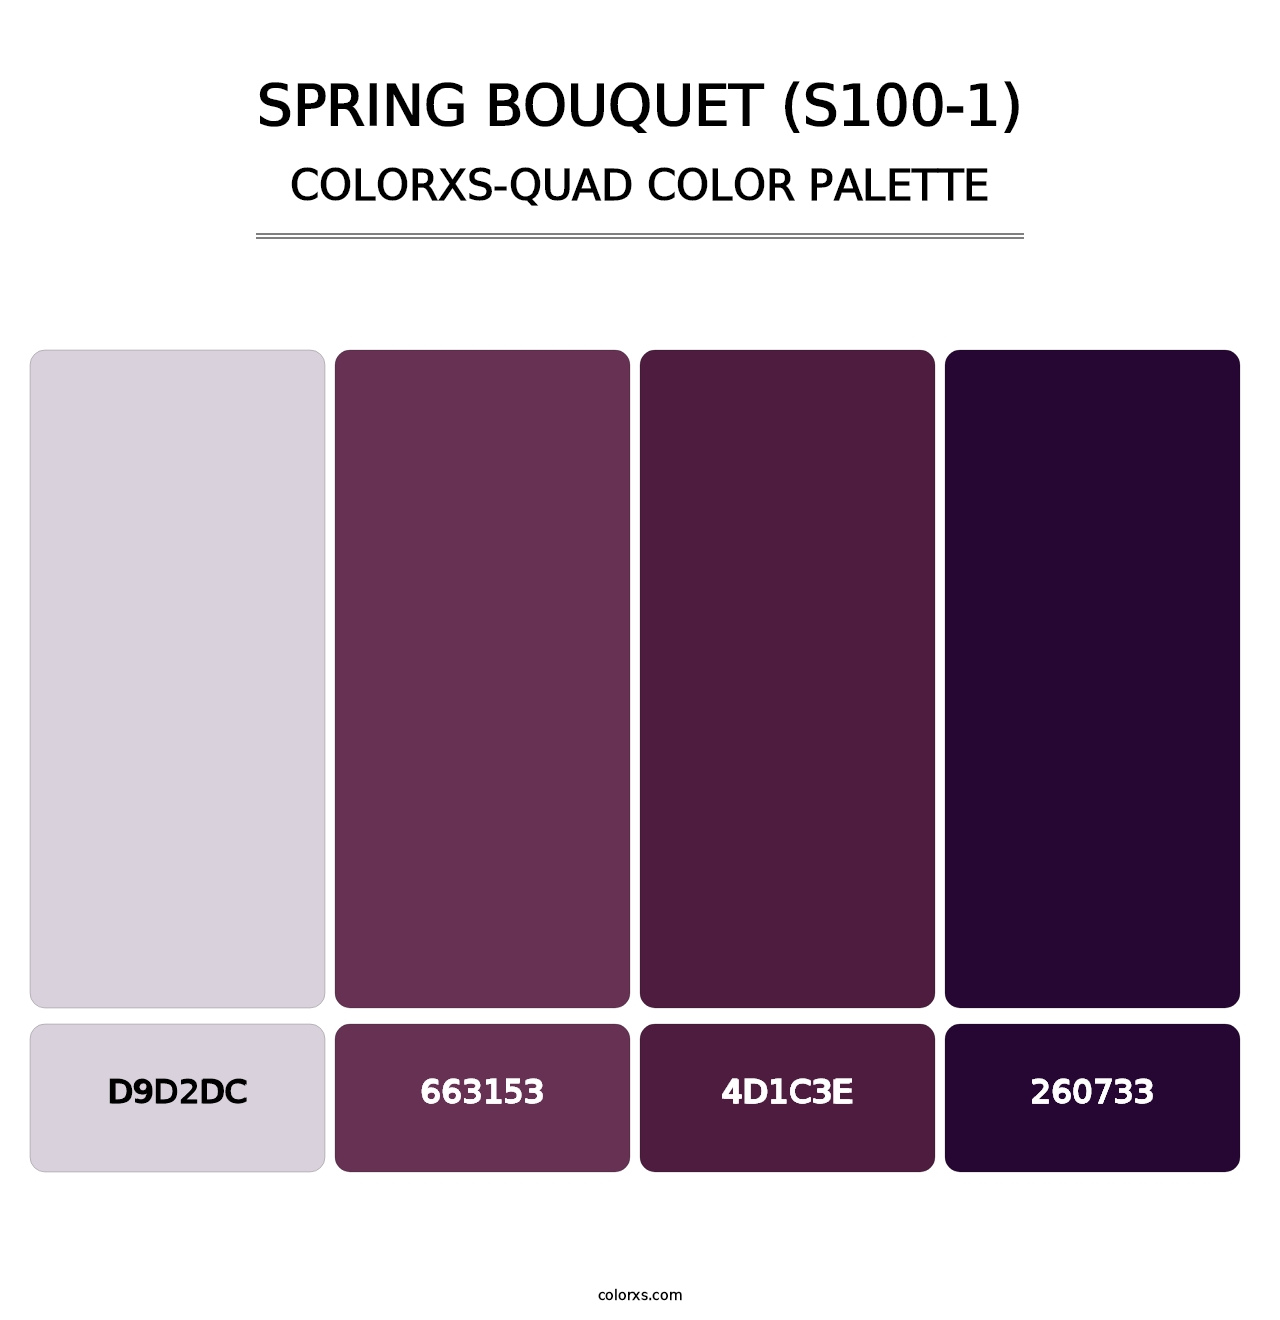 Spring Bouquet (S100-1) - Colorxs Quad Palette